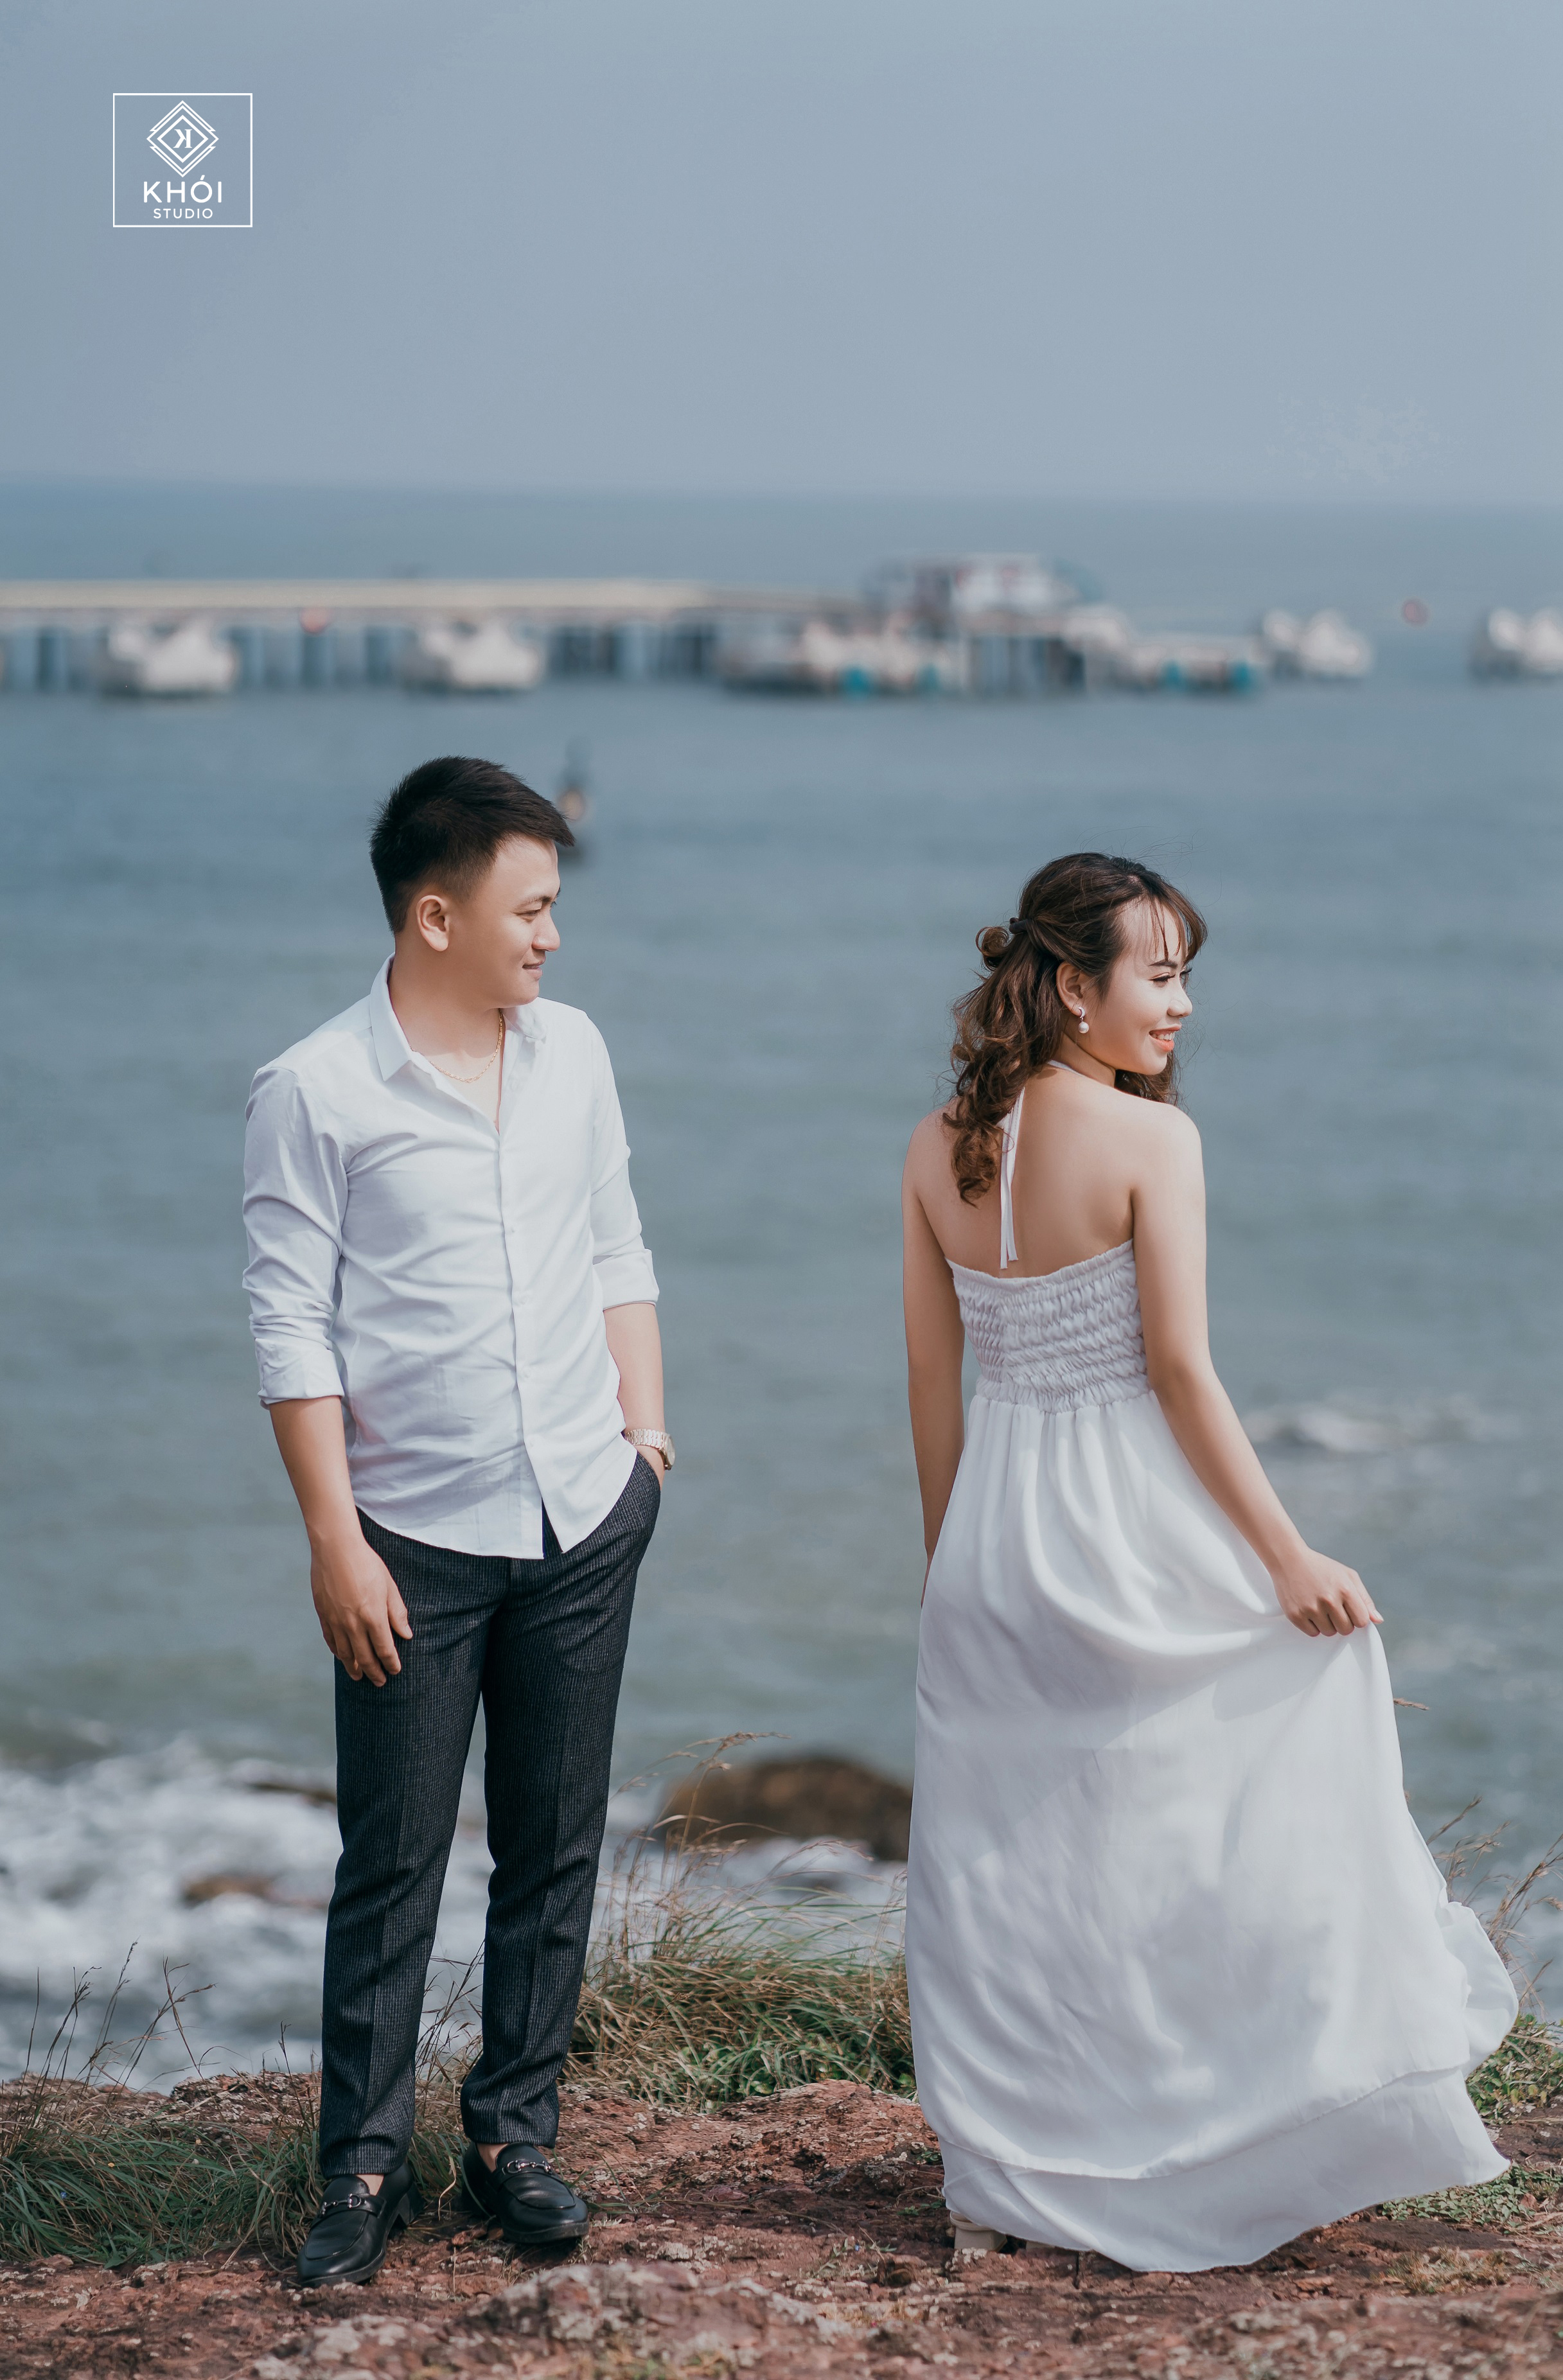 Nếu bạn đang sống hoặc đi du lịch tới Vinh, hãy đừng quên đến ngay studio chụp ảnh cưới để lưu giữ những khoảnh khắc đẹp nhất của bạn và gia đình.